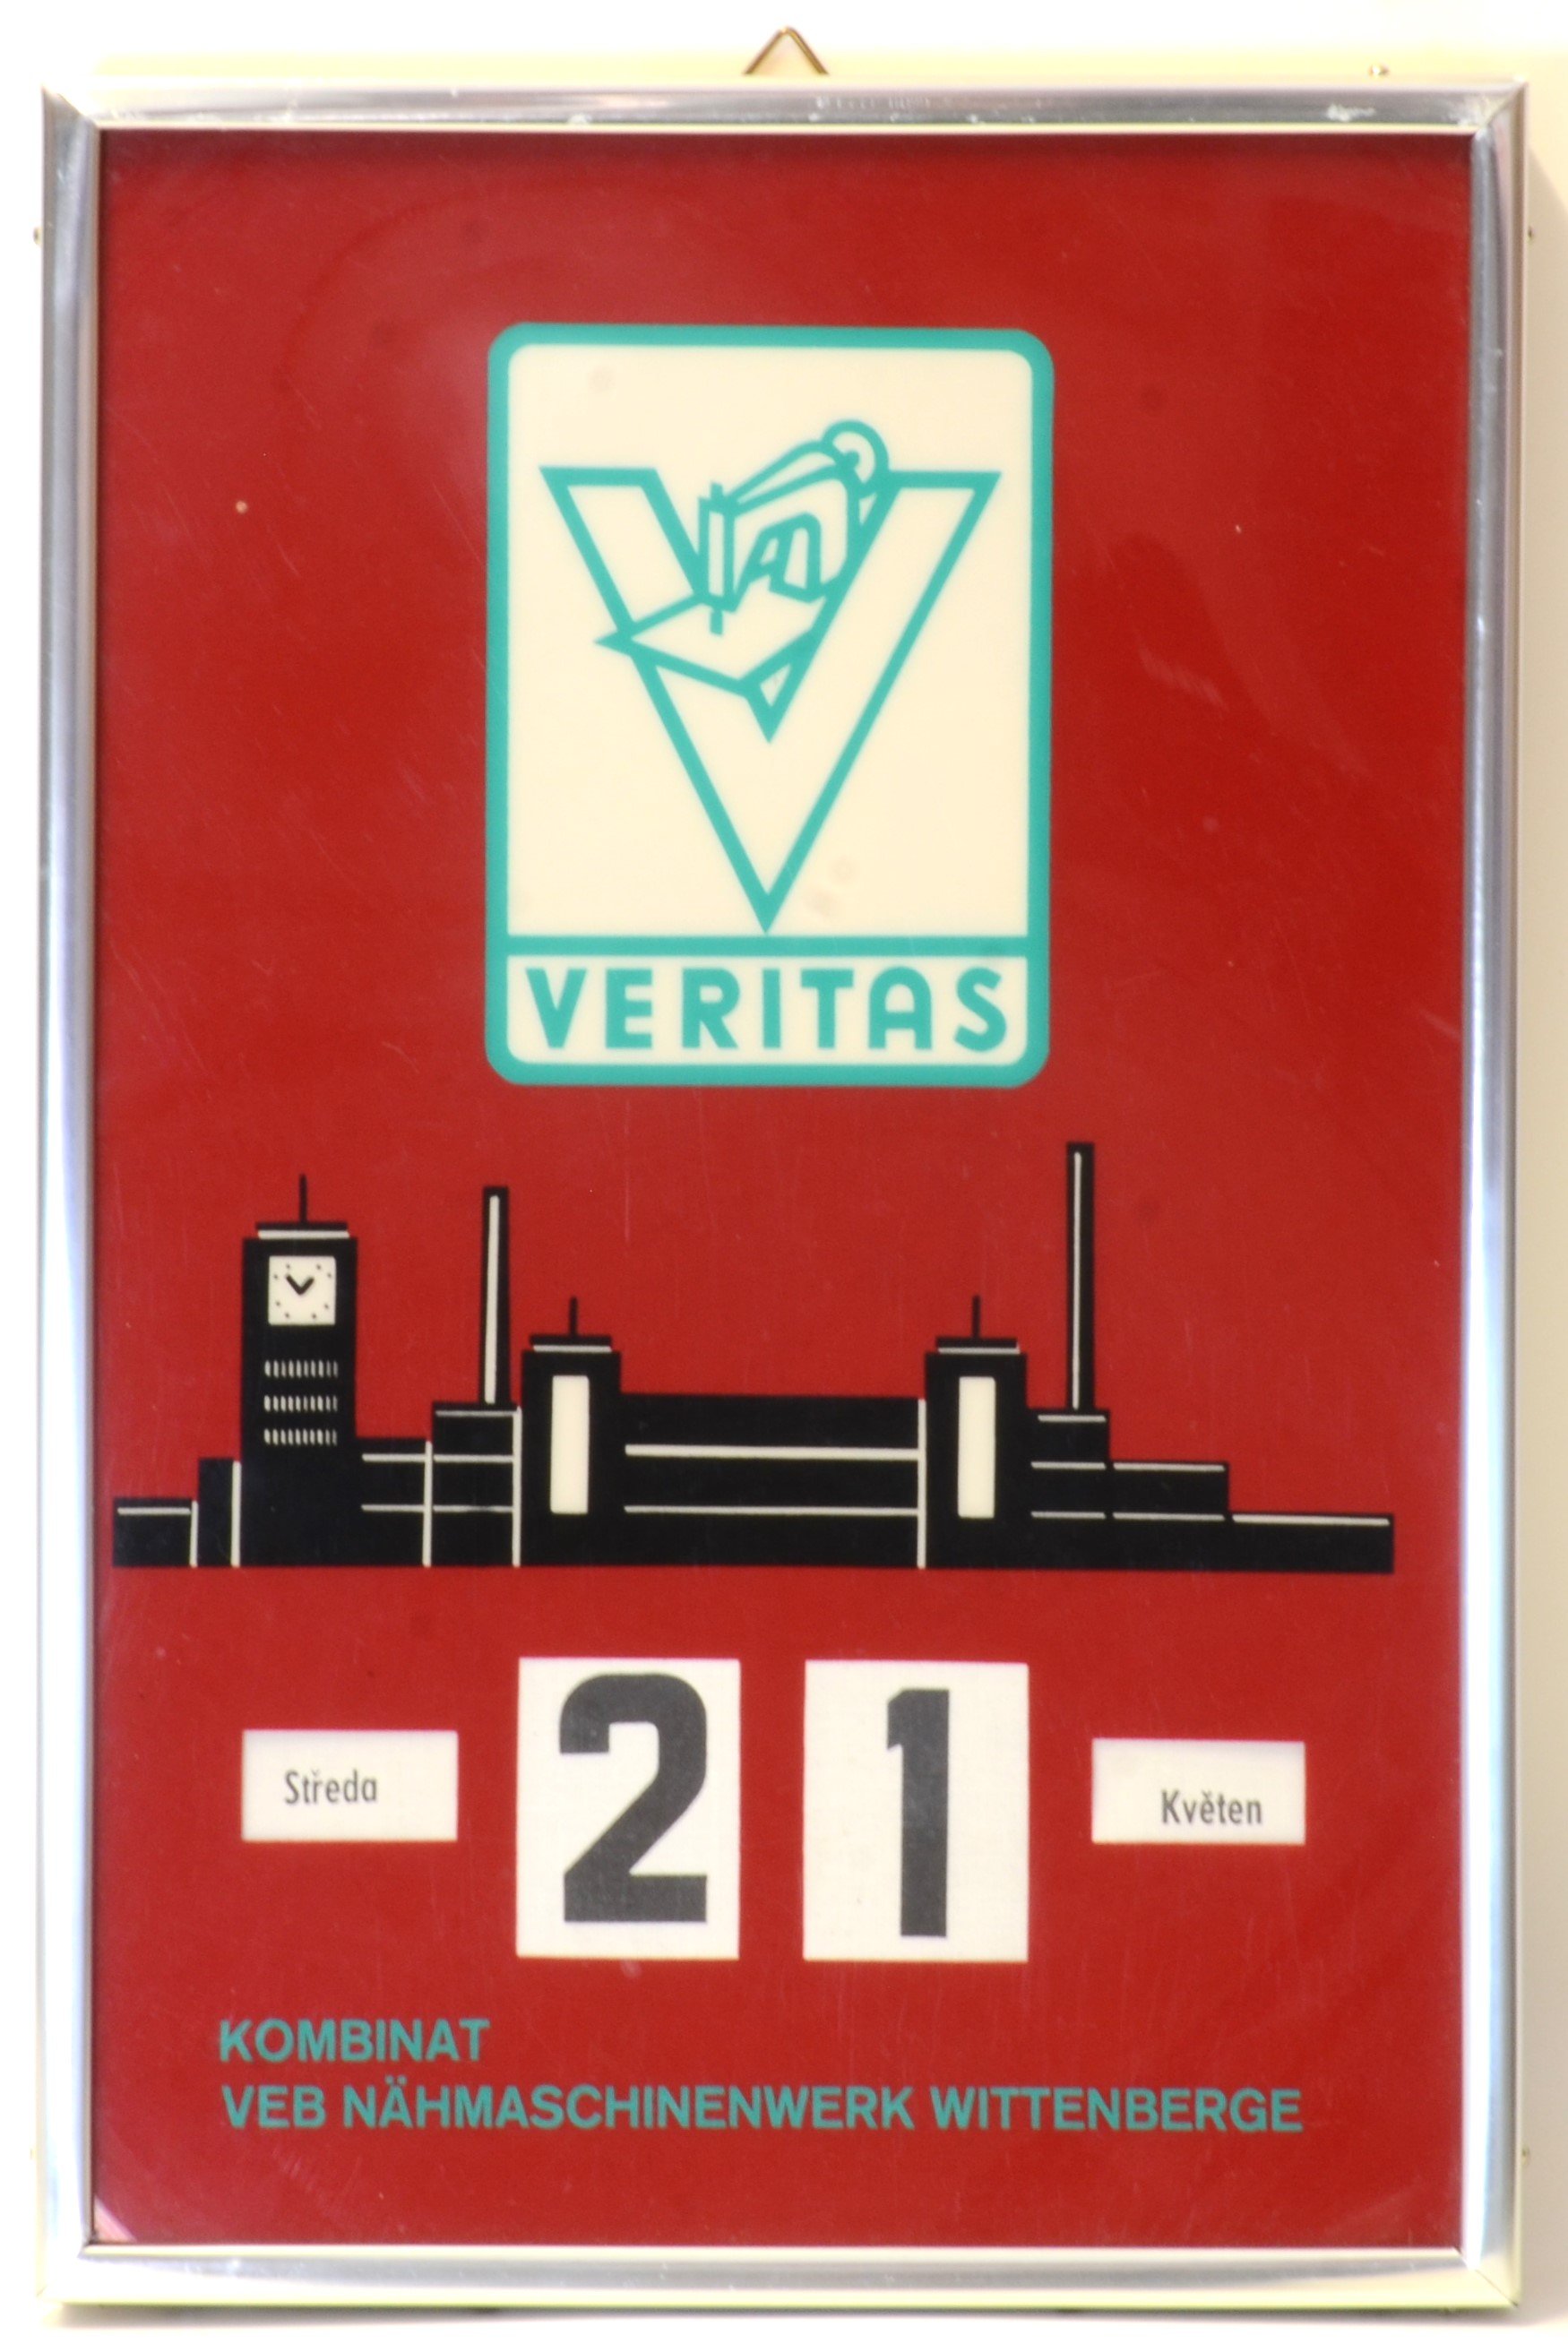 Verstellbarer Kalender aus dem VEB Nähmaschinenmerk Wittenberge (DDR Geschichtsmuseum im Dokumentationszentrum Perleberg CC BY-SA)